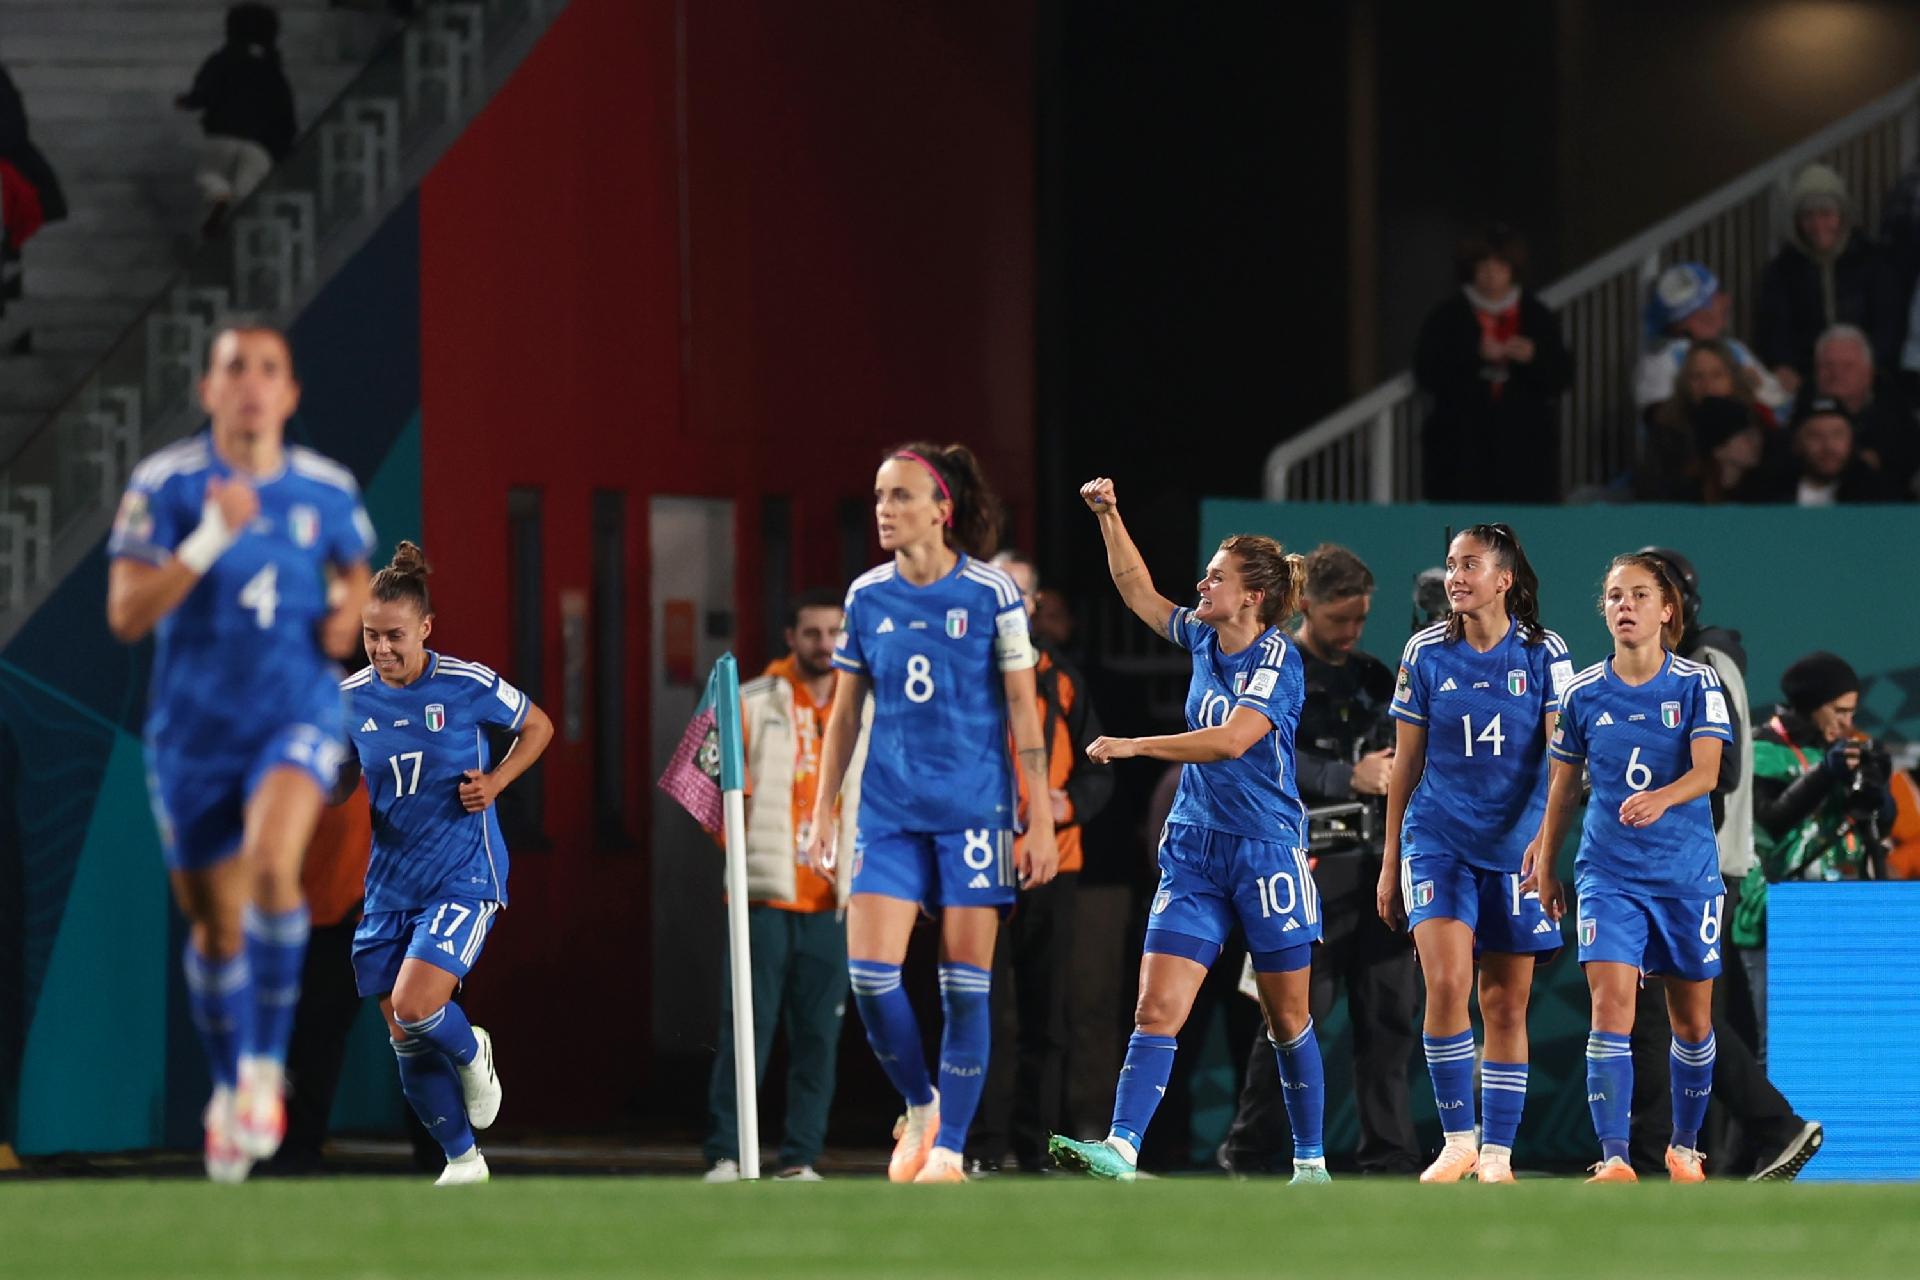 Itália x Argentina: onde assistir ao vivo o jogo pela Copa do Mundo  Feminina